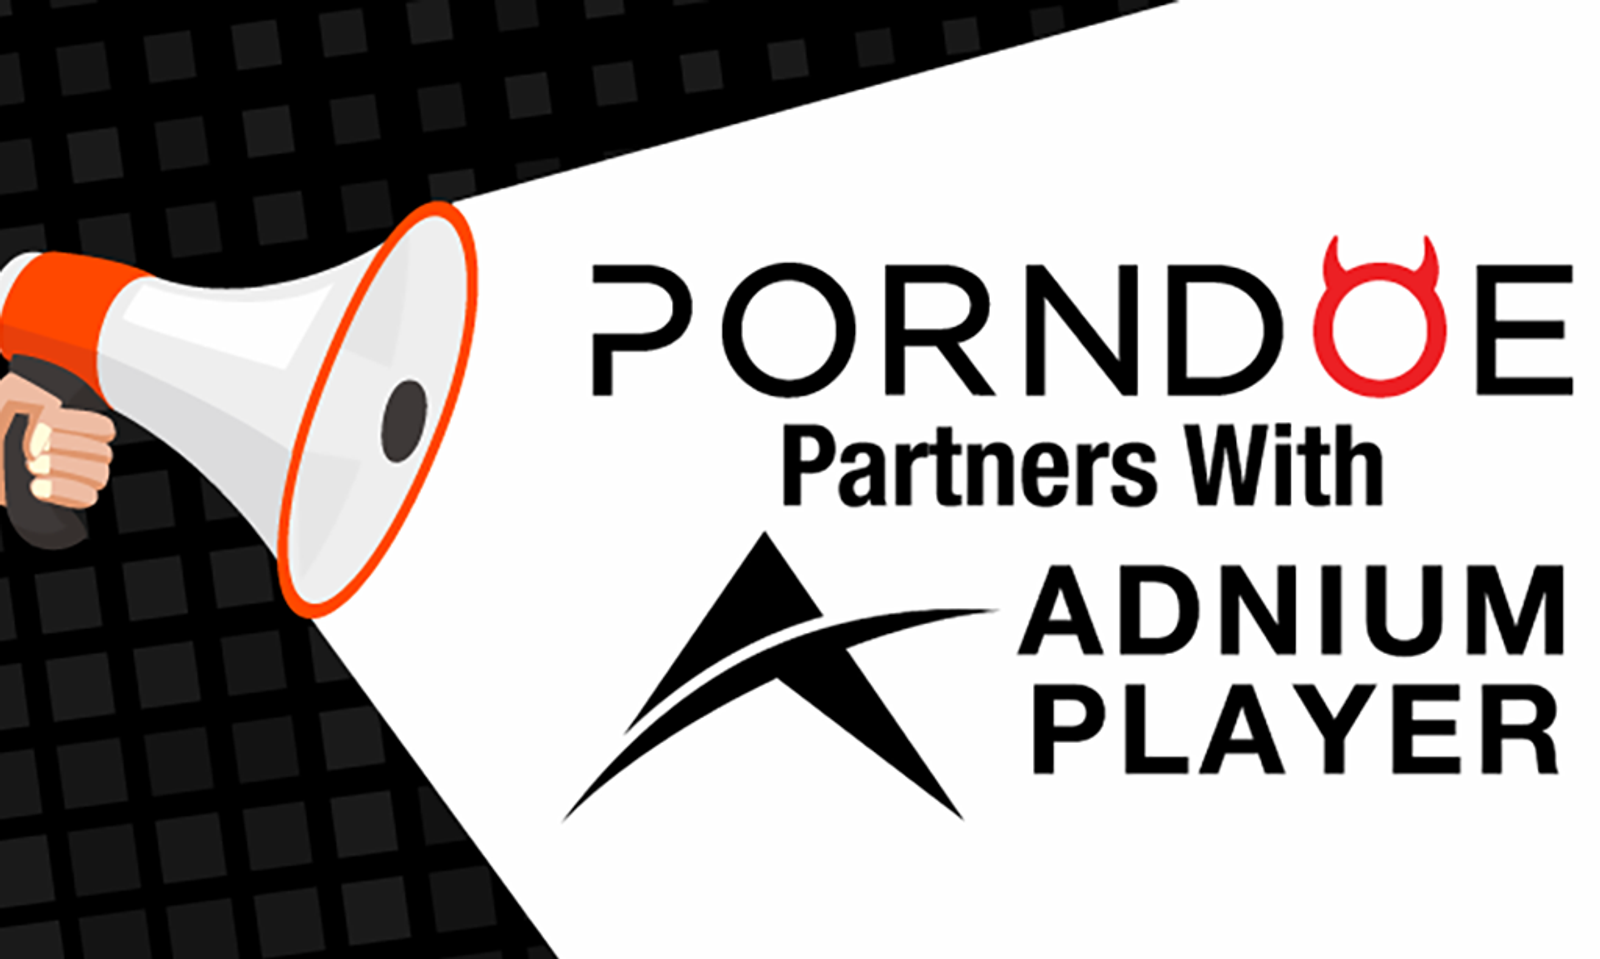 Porndoe.com Will Be Using Grand Slam Media's Adnium Player